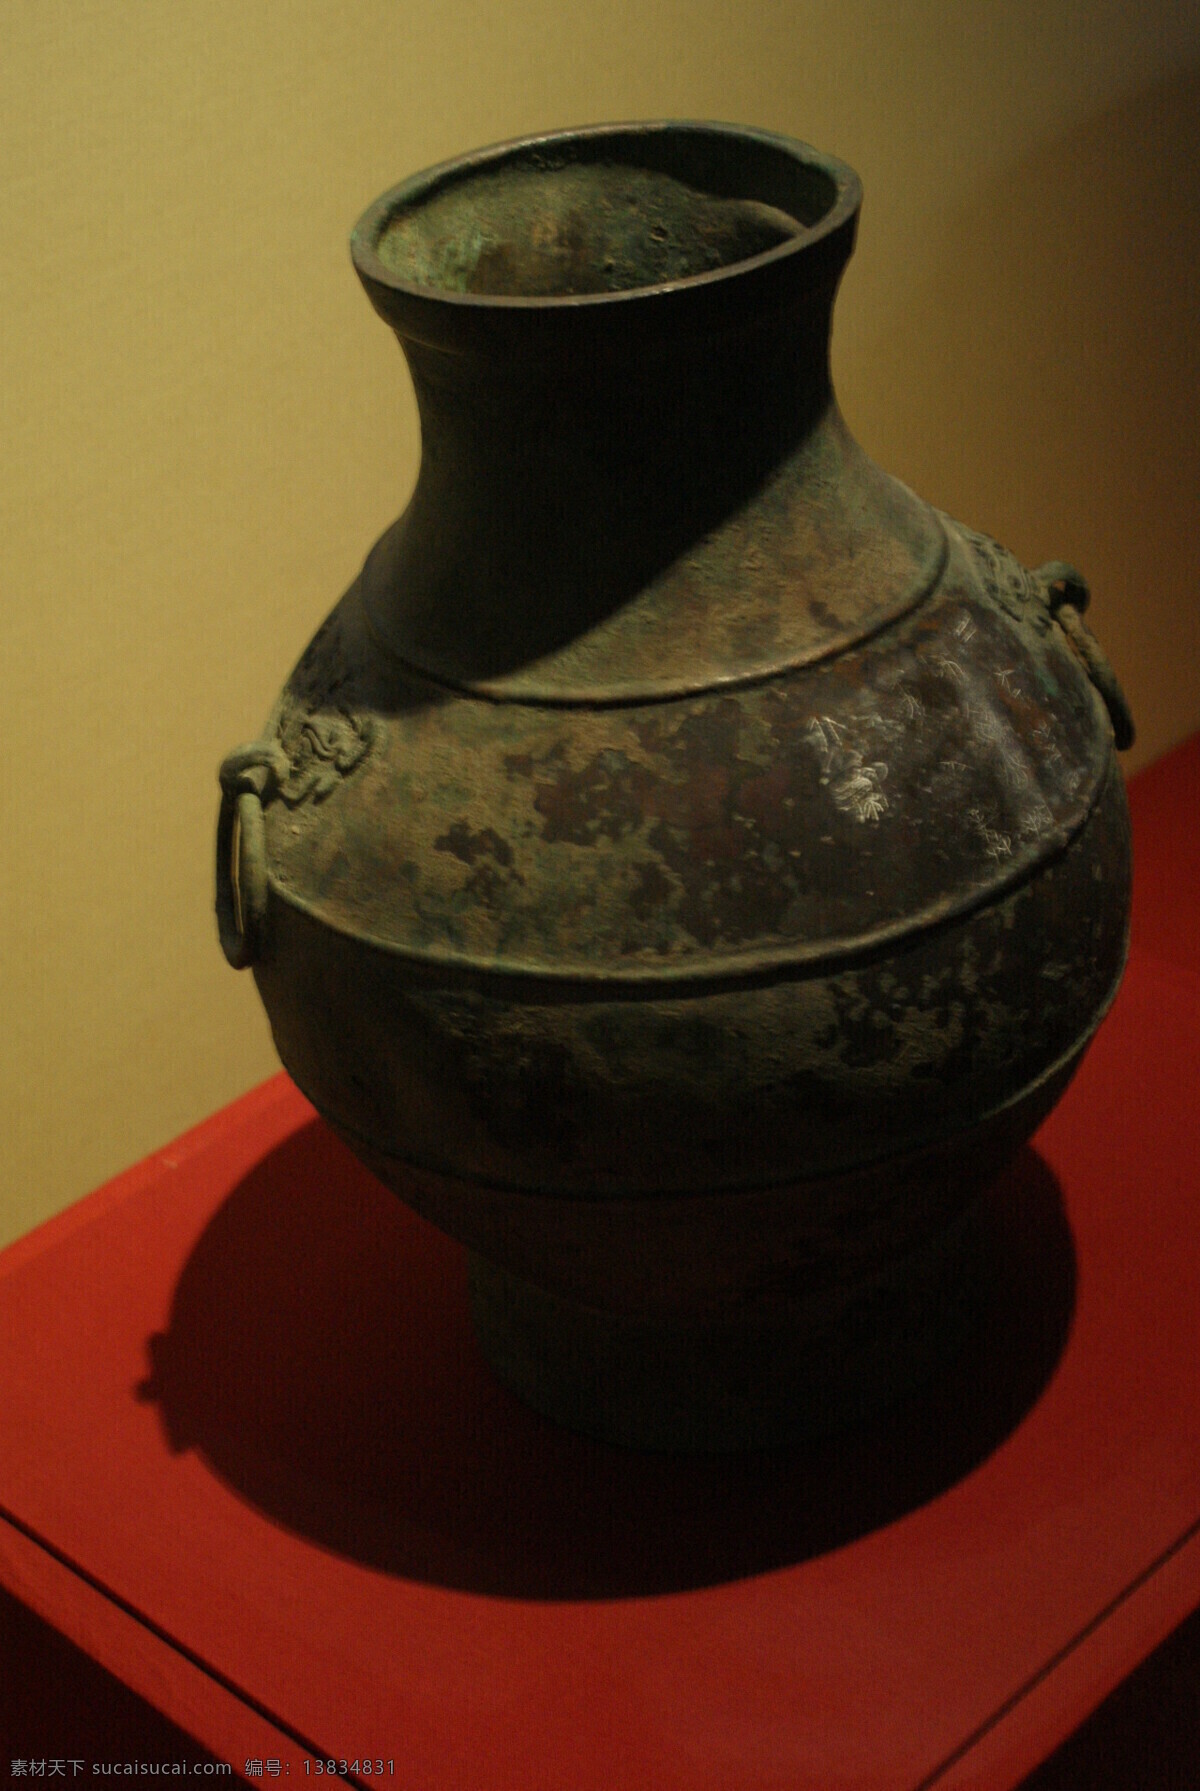 博物馆 传统文化 雕塑 工艺品 花瓶 文化艺术 文物 金属器皿 博物馆文物 西安博物馆 深色调 展览品 装饰素材 展示设计